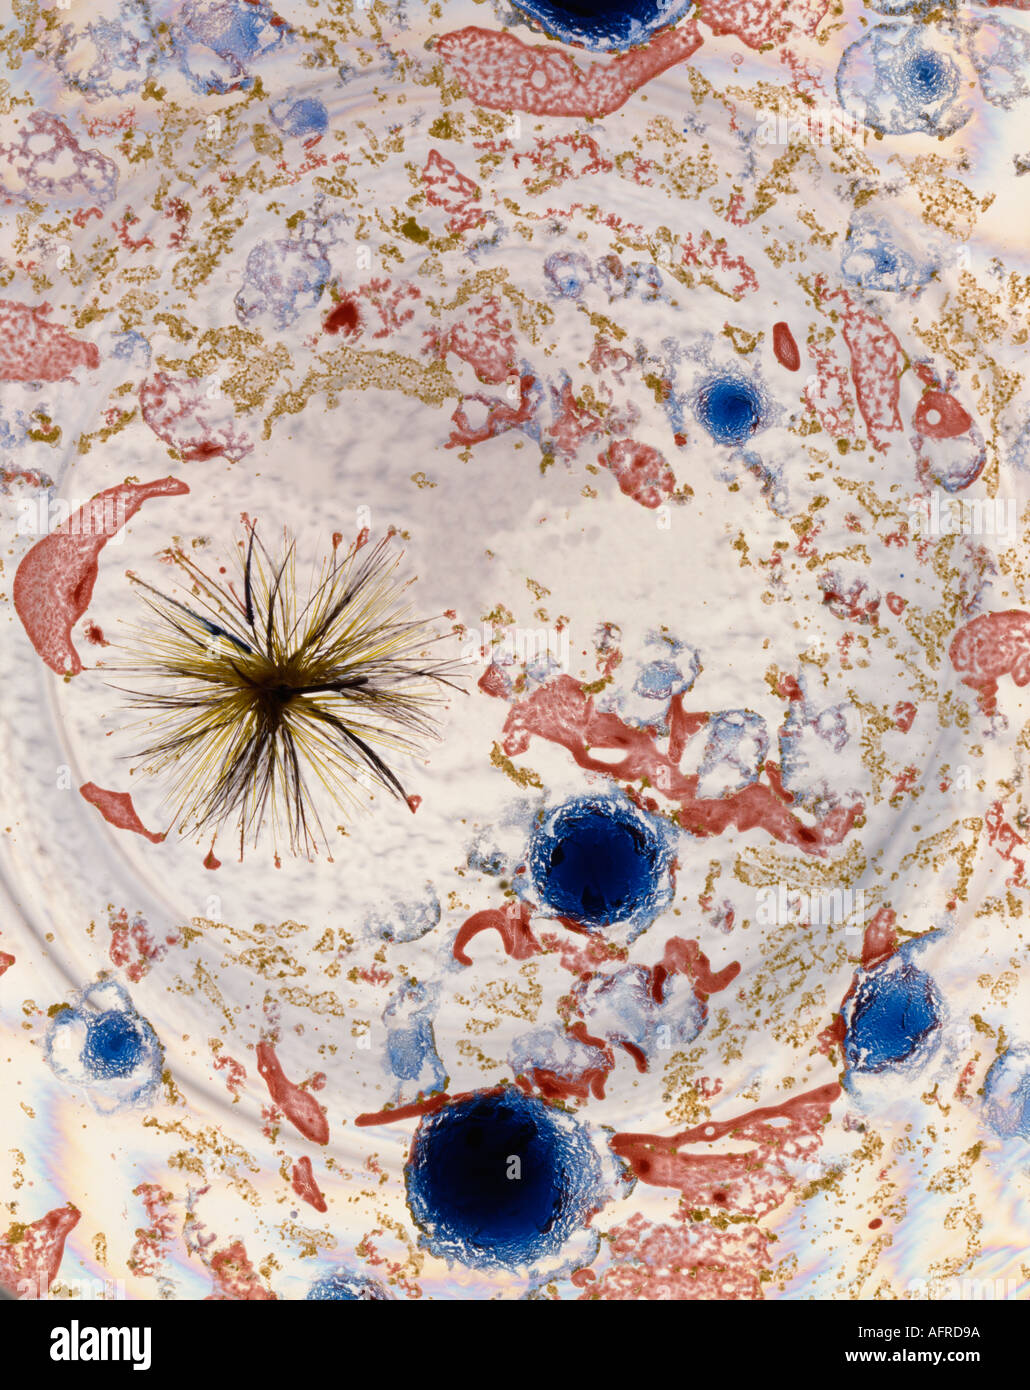 Farbig lackiert auf dem Wasser und ein Forellenangeln fliegen an der Spitze Stockfoto